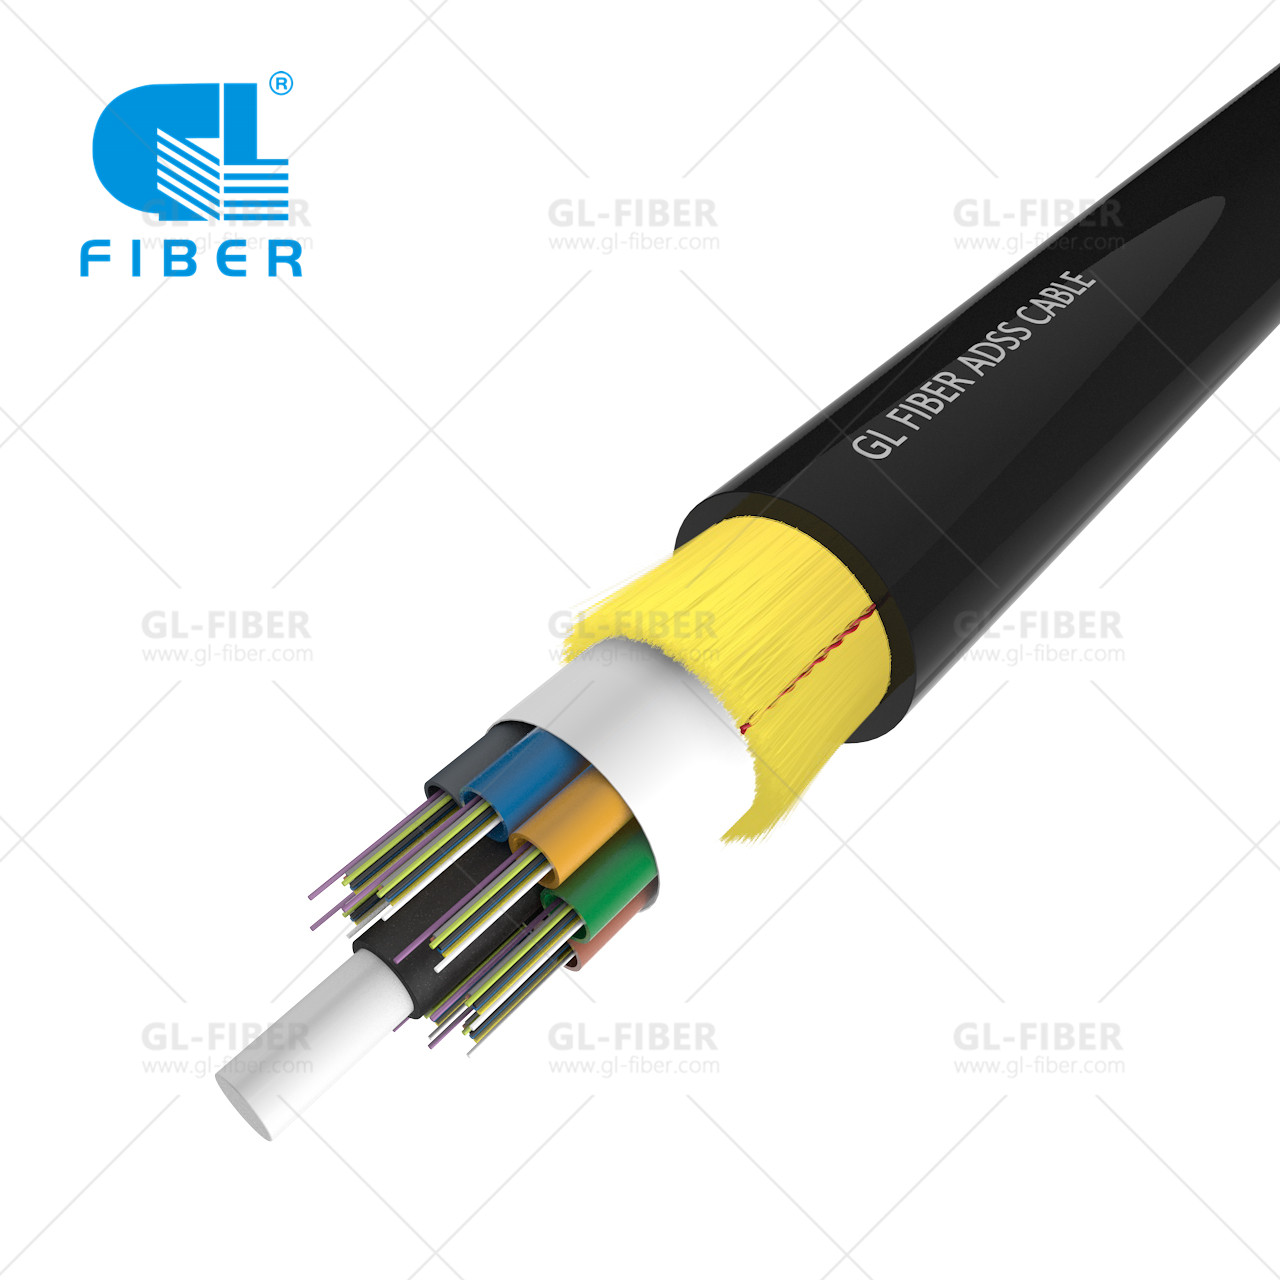 Resolució de problemes habituals amb el cable de fibra ADSS